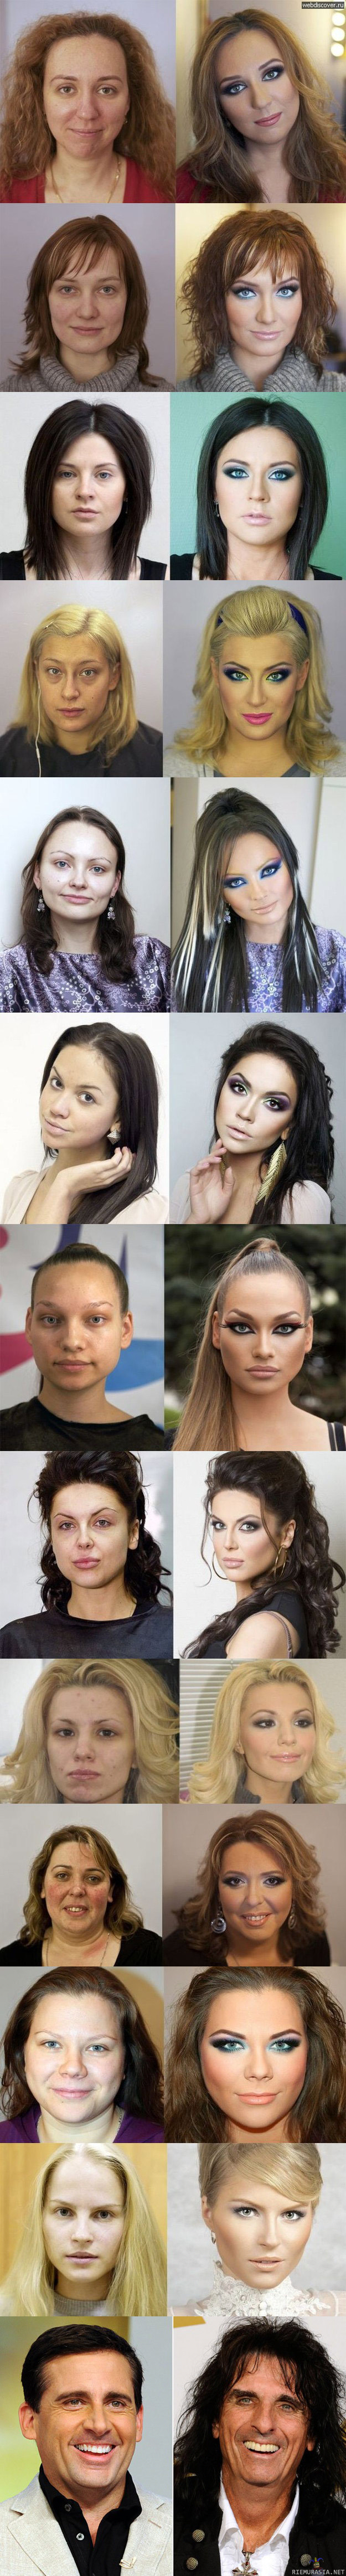 Meikkaus  - enne ja jälkeen 